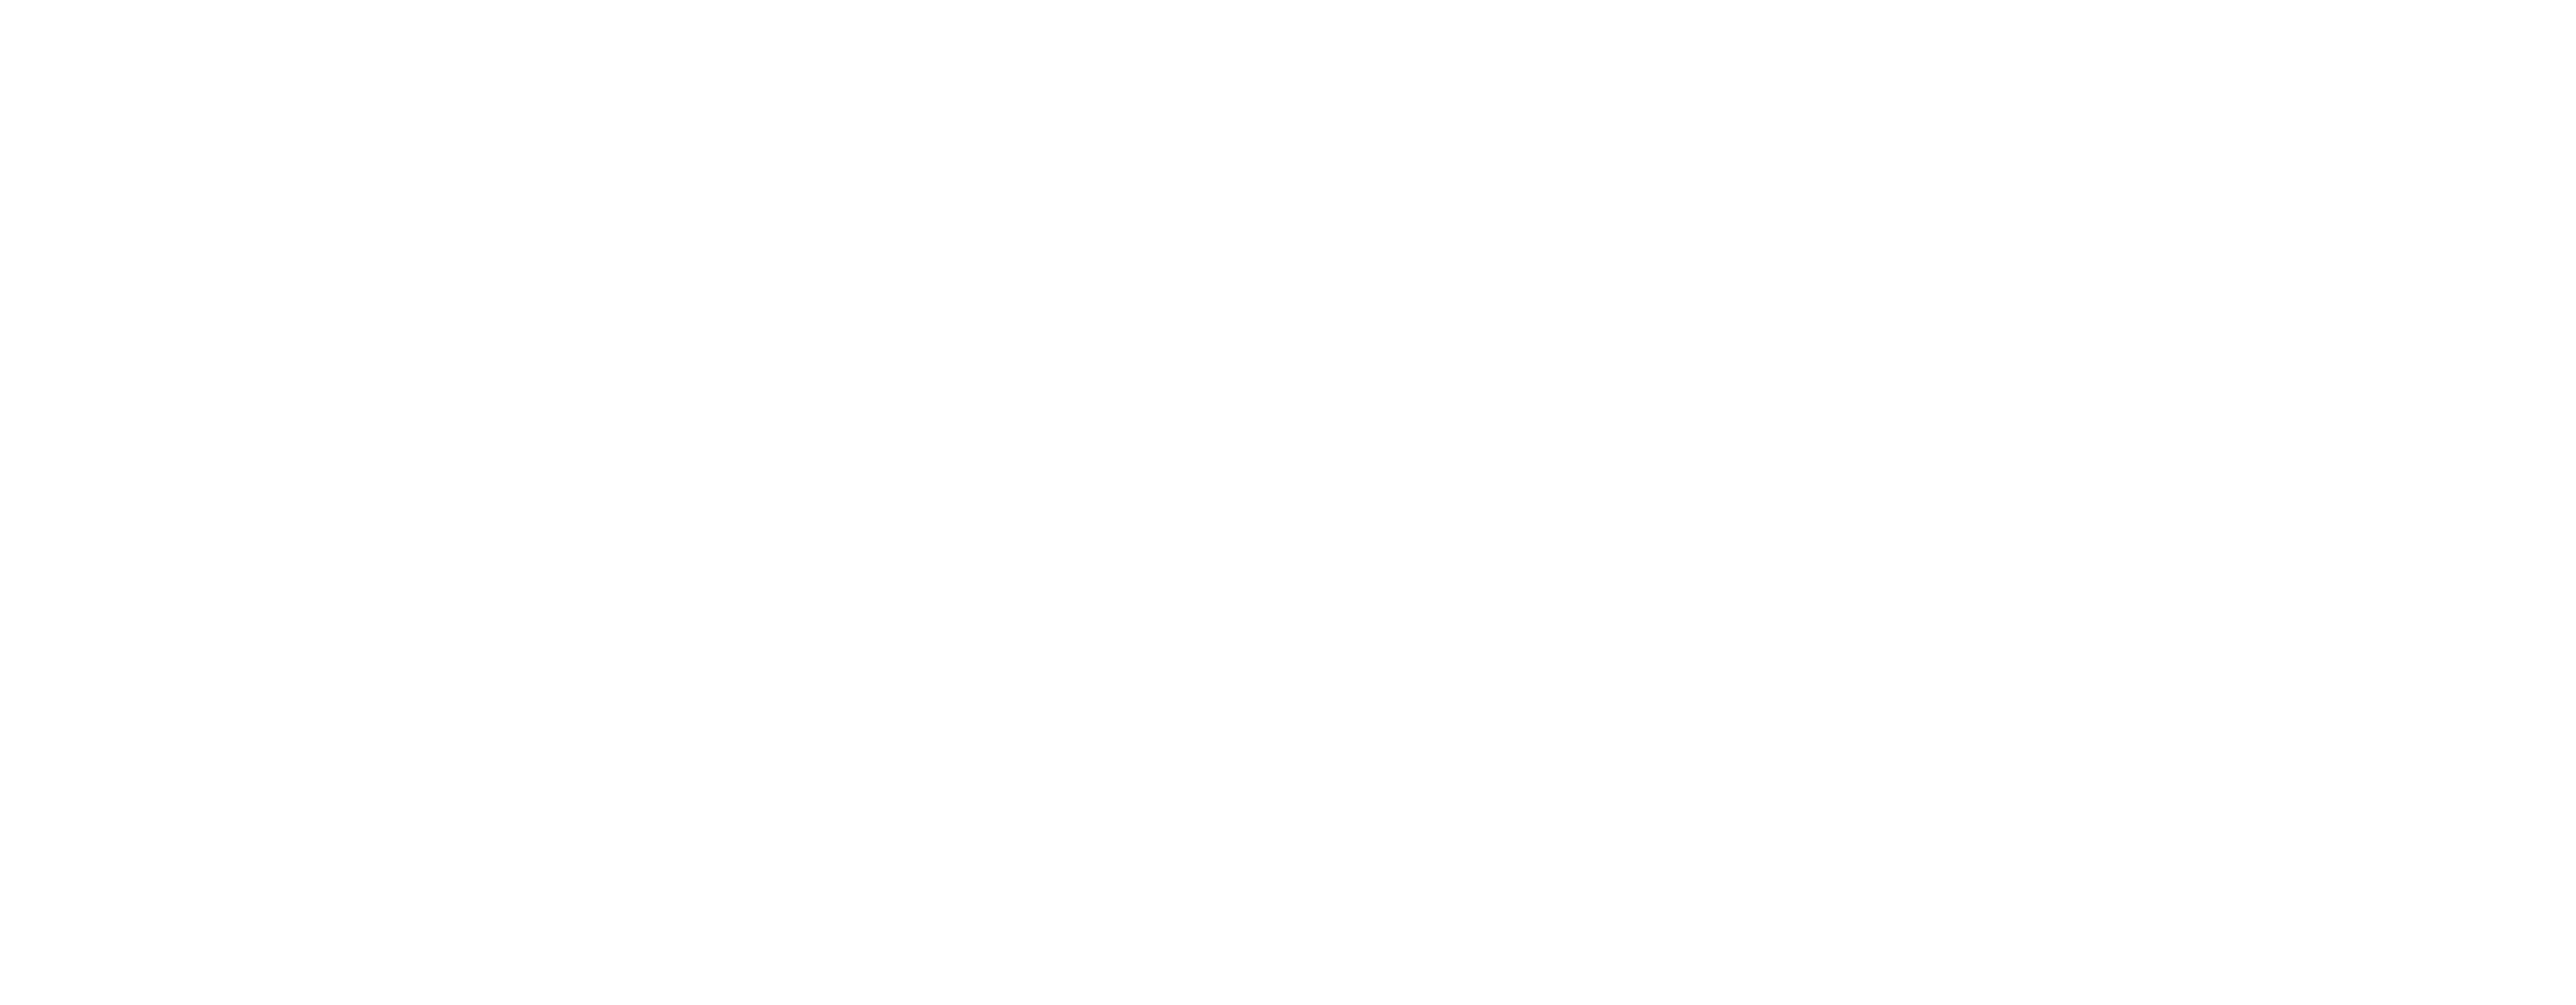 NASA Digital Transformation